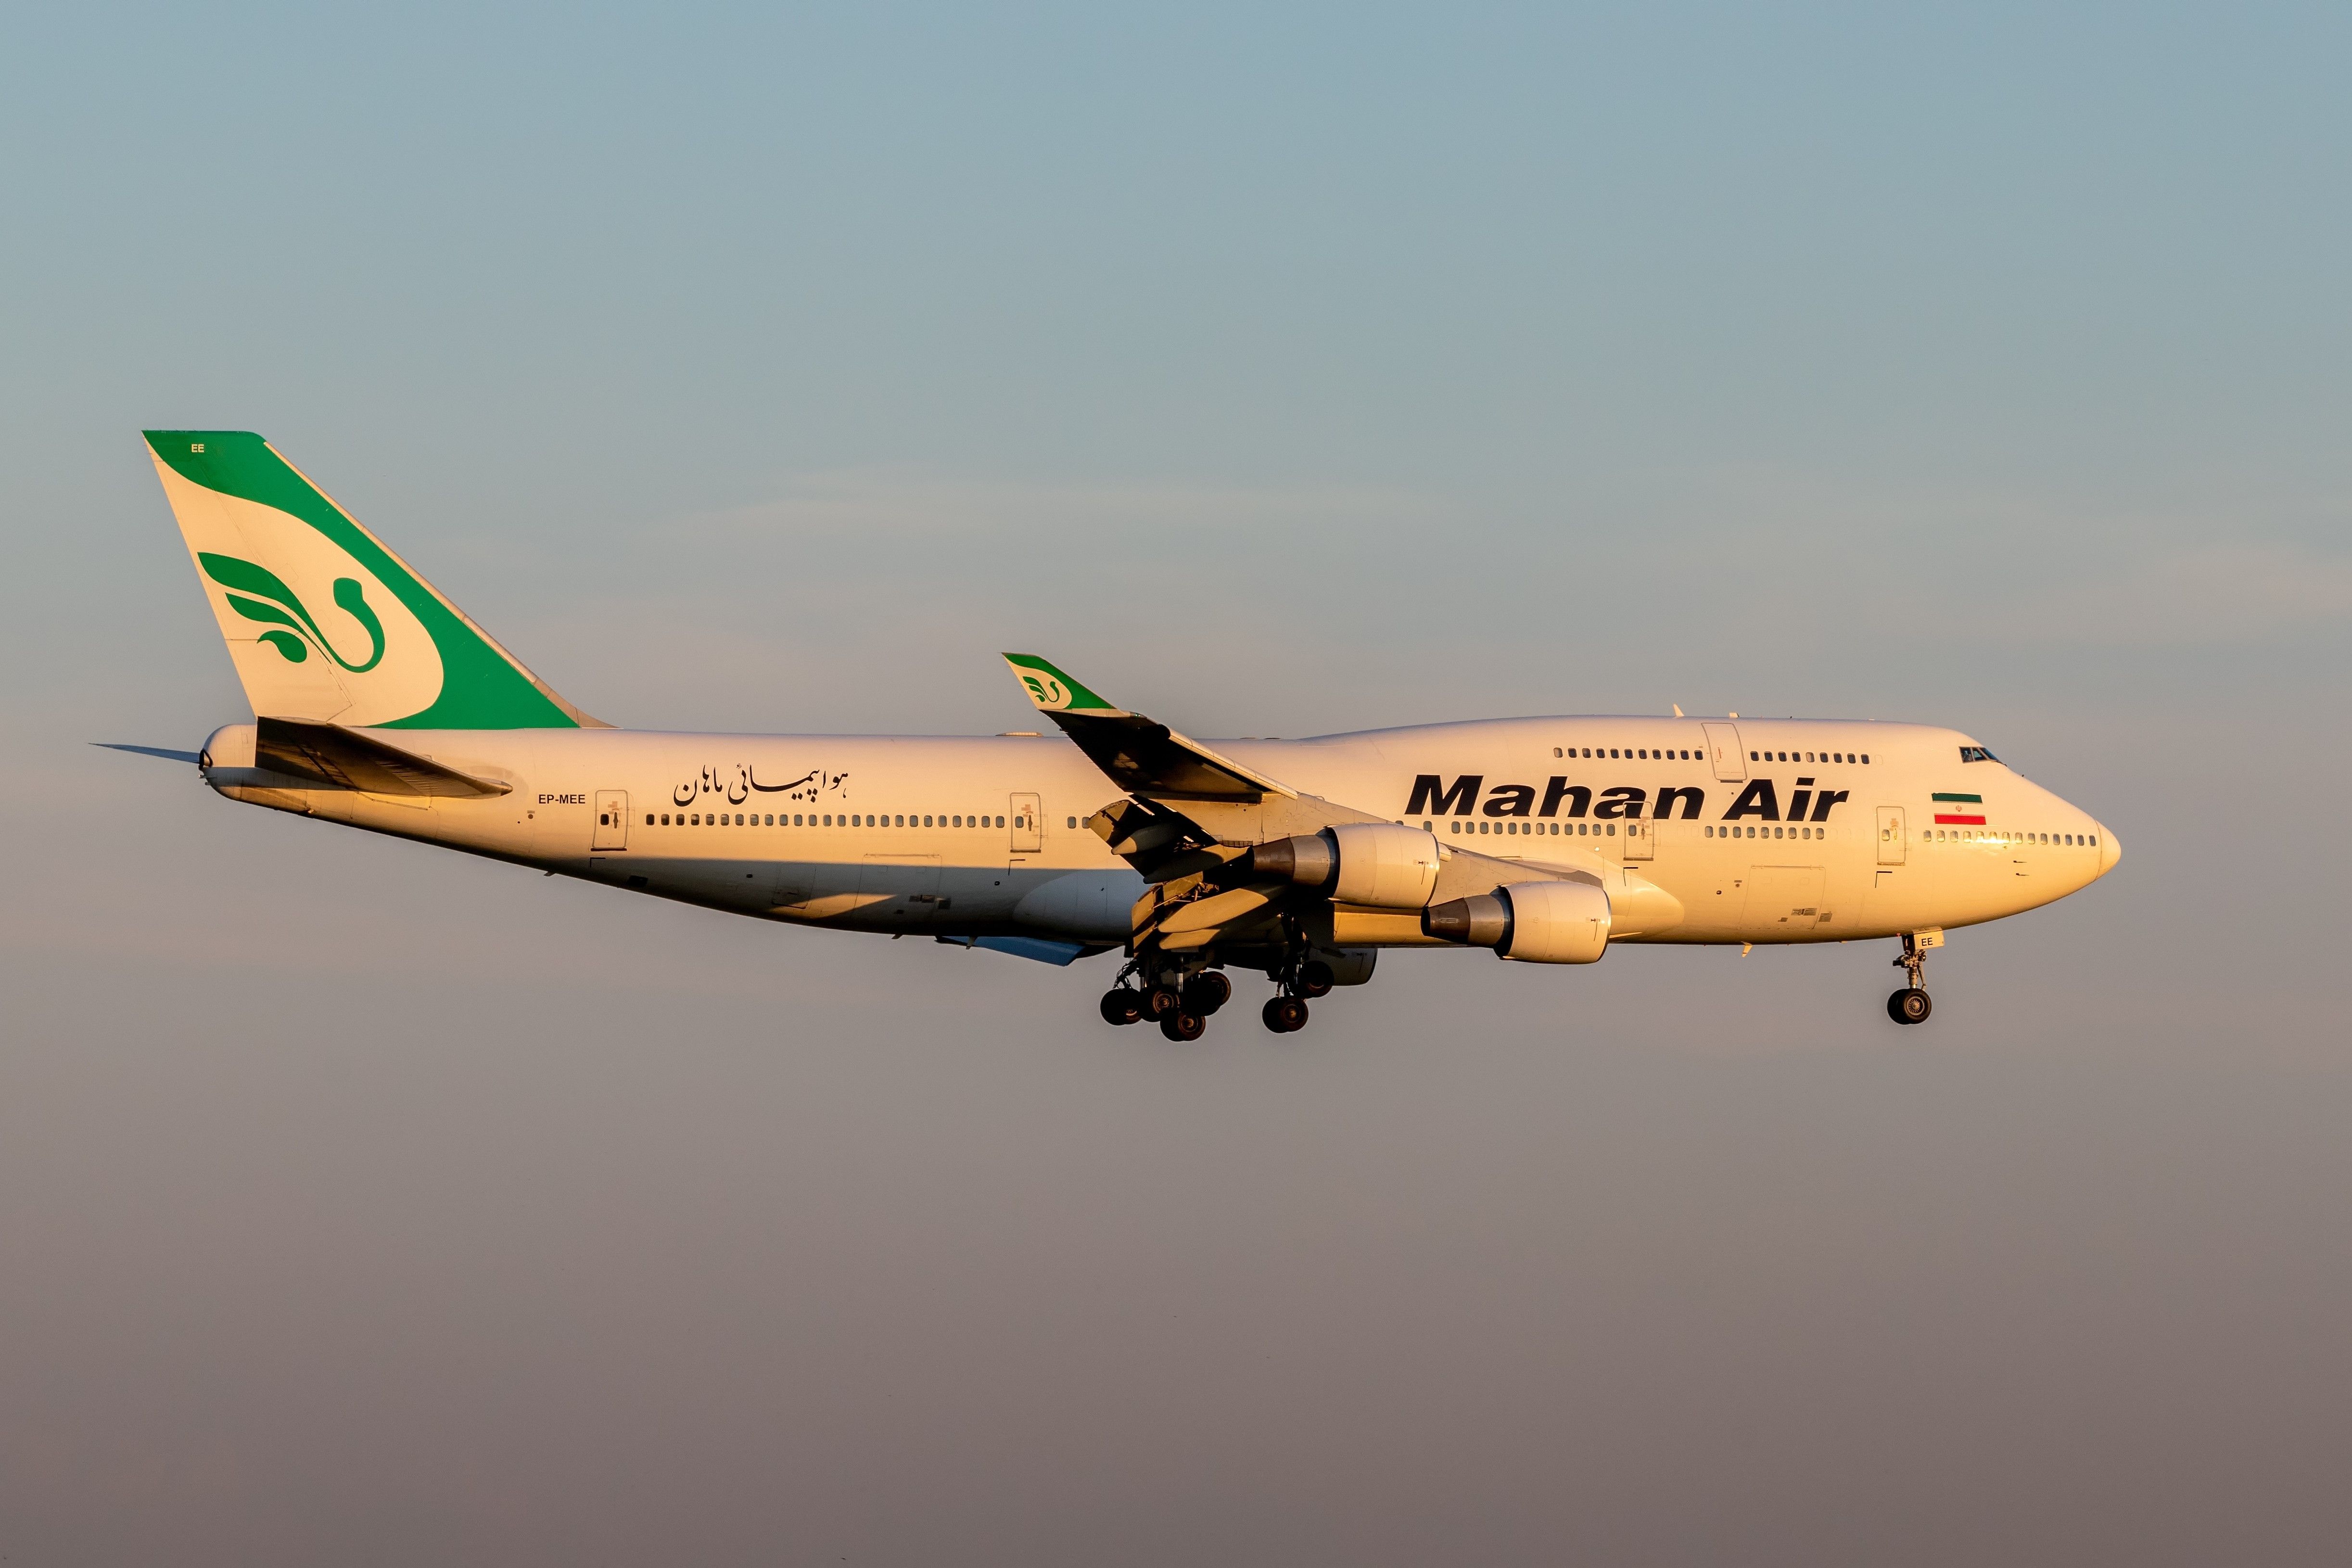 Mahan Air Boeing 747-400